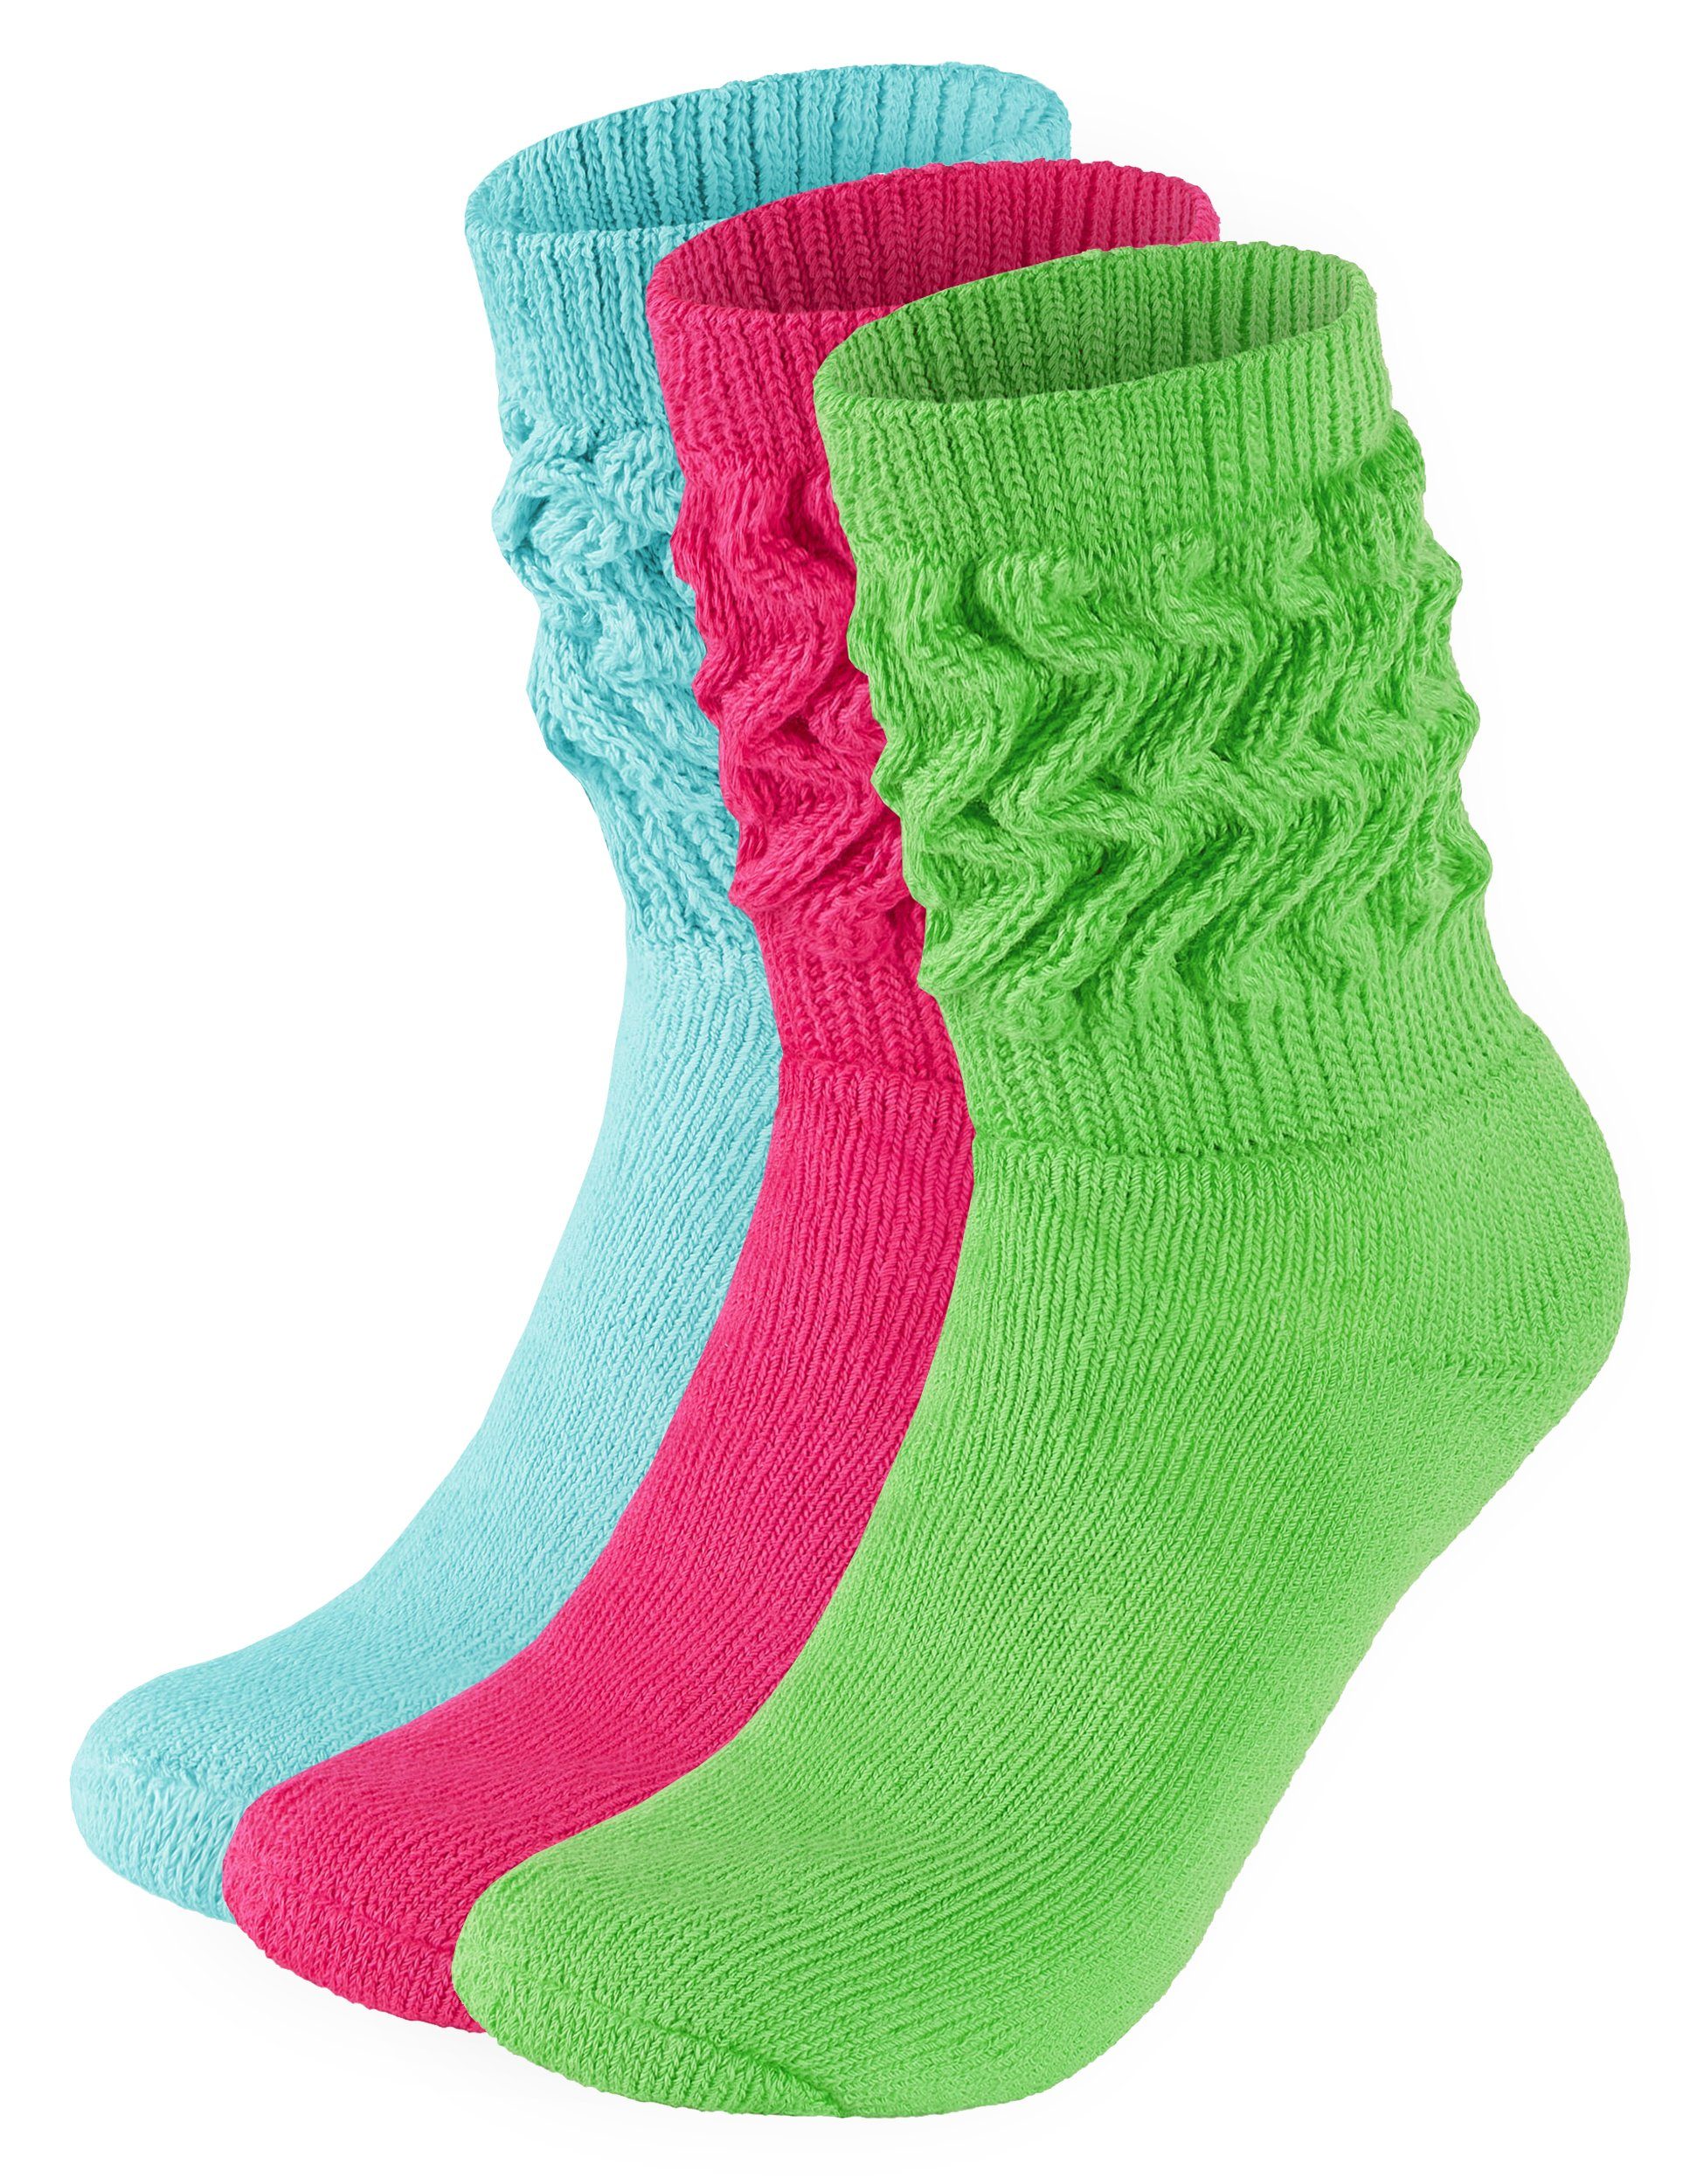 BRUBAKER Schoppersocken 3er Set Slouch Socken - Damen Baumwollsocken für Sport und Freizeit (3-Paar) Lässige Retro-Socken für Frauen - Scrunch Knit Damensocken 1x Mint, 1x Pink und 1x Grün